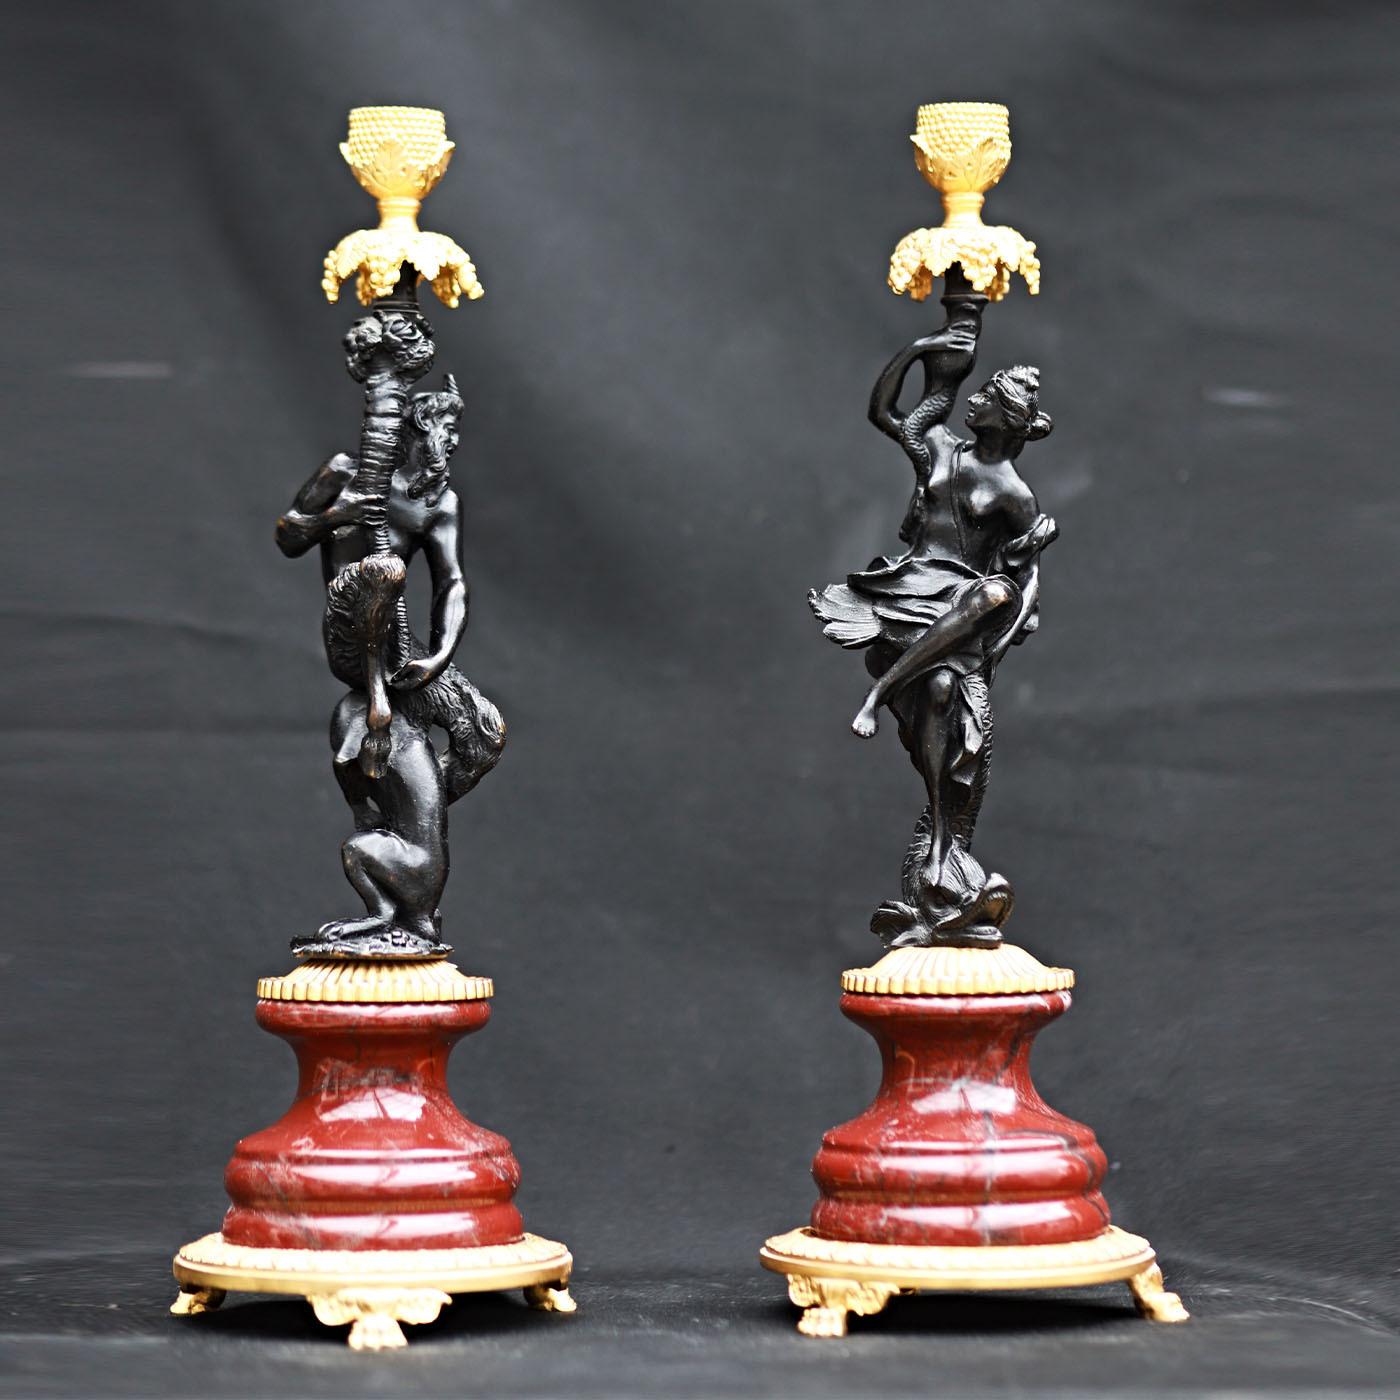 Die beiden skulpturalen Kerzenständer dieses Sets zeichnen sich durch eine kostbare Silhouette aus, die handgemeißelte Bronzestatuetten mit Messing und feinem Rosso Levanto-Marmor kombiniert. Die anthropomorphen Figuren, ein Faun und eine Magd, sind